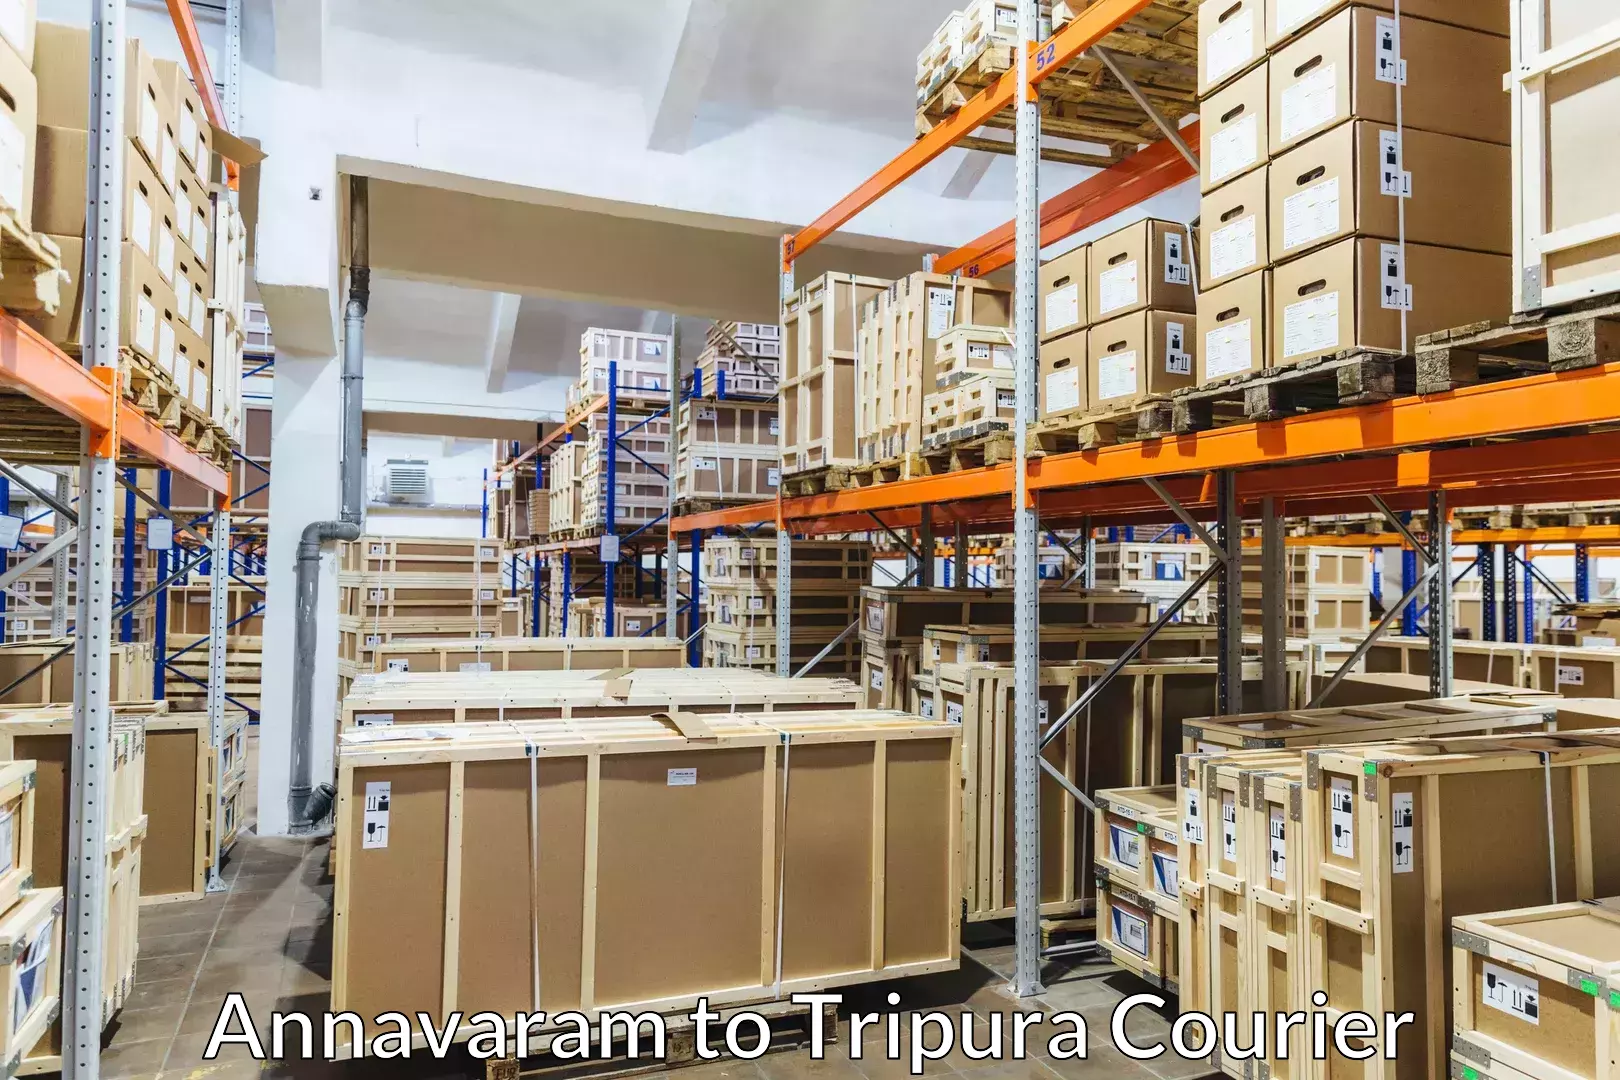 Door-to-door relocation services Annavaram to Udaipur Tripura